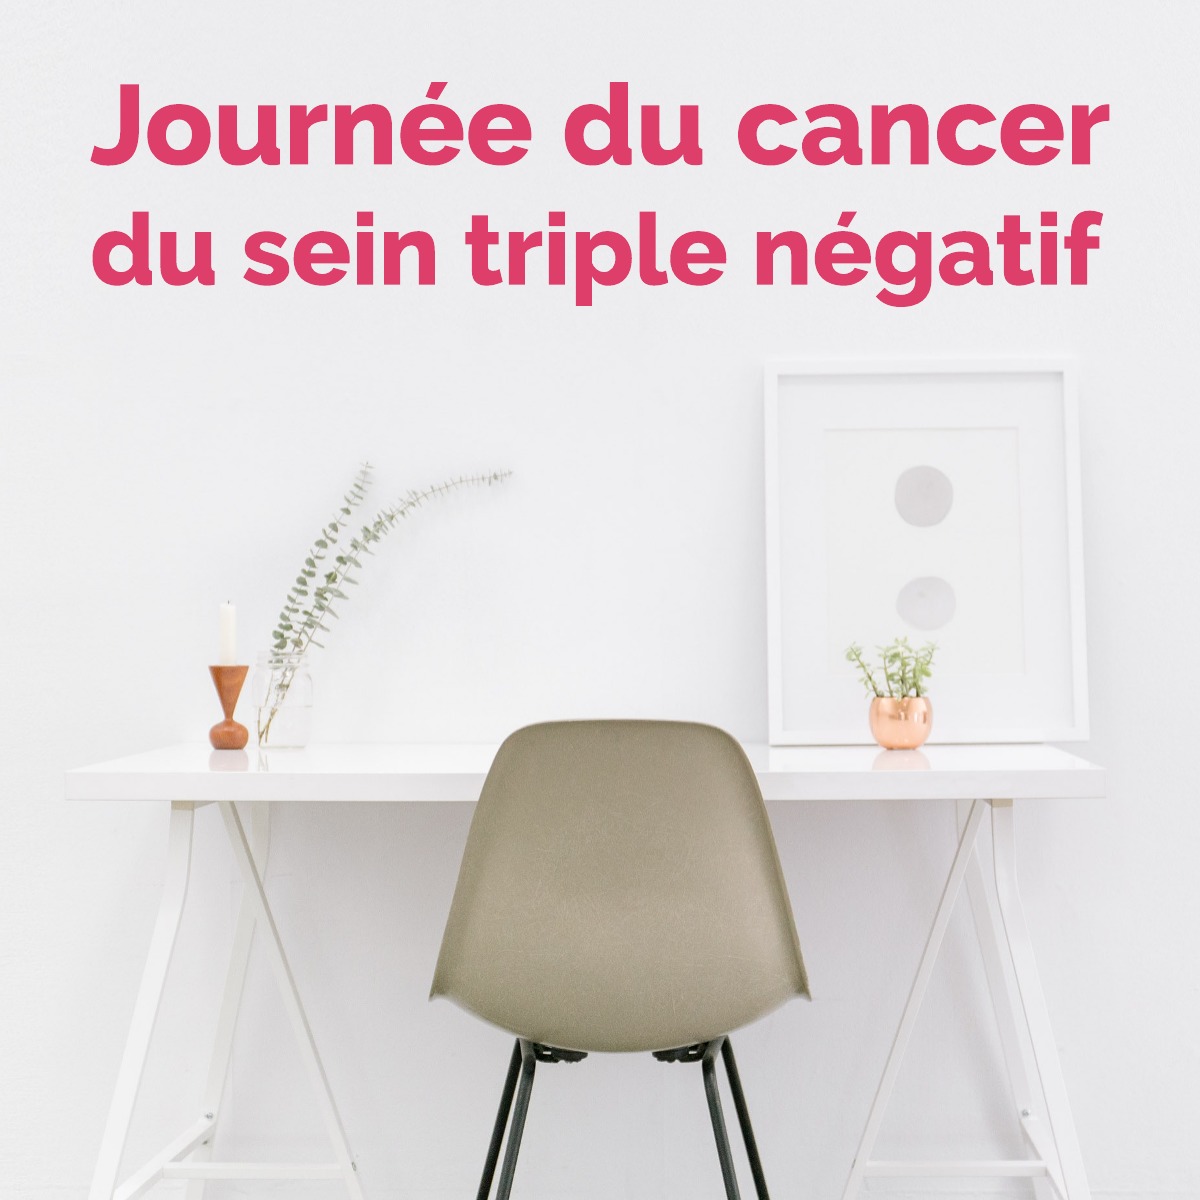 Journée du cancer du sein triple négatif